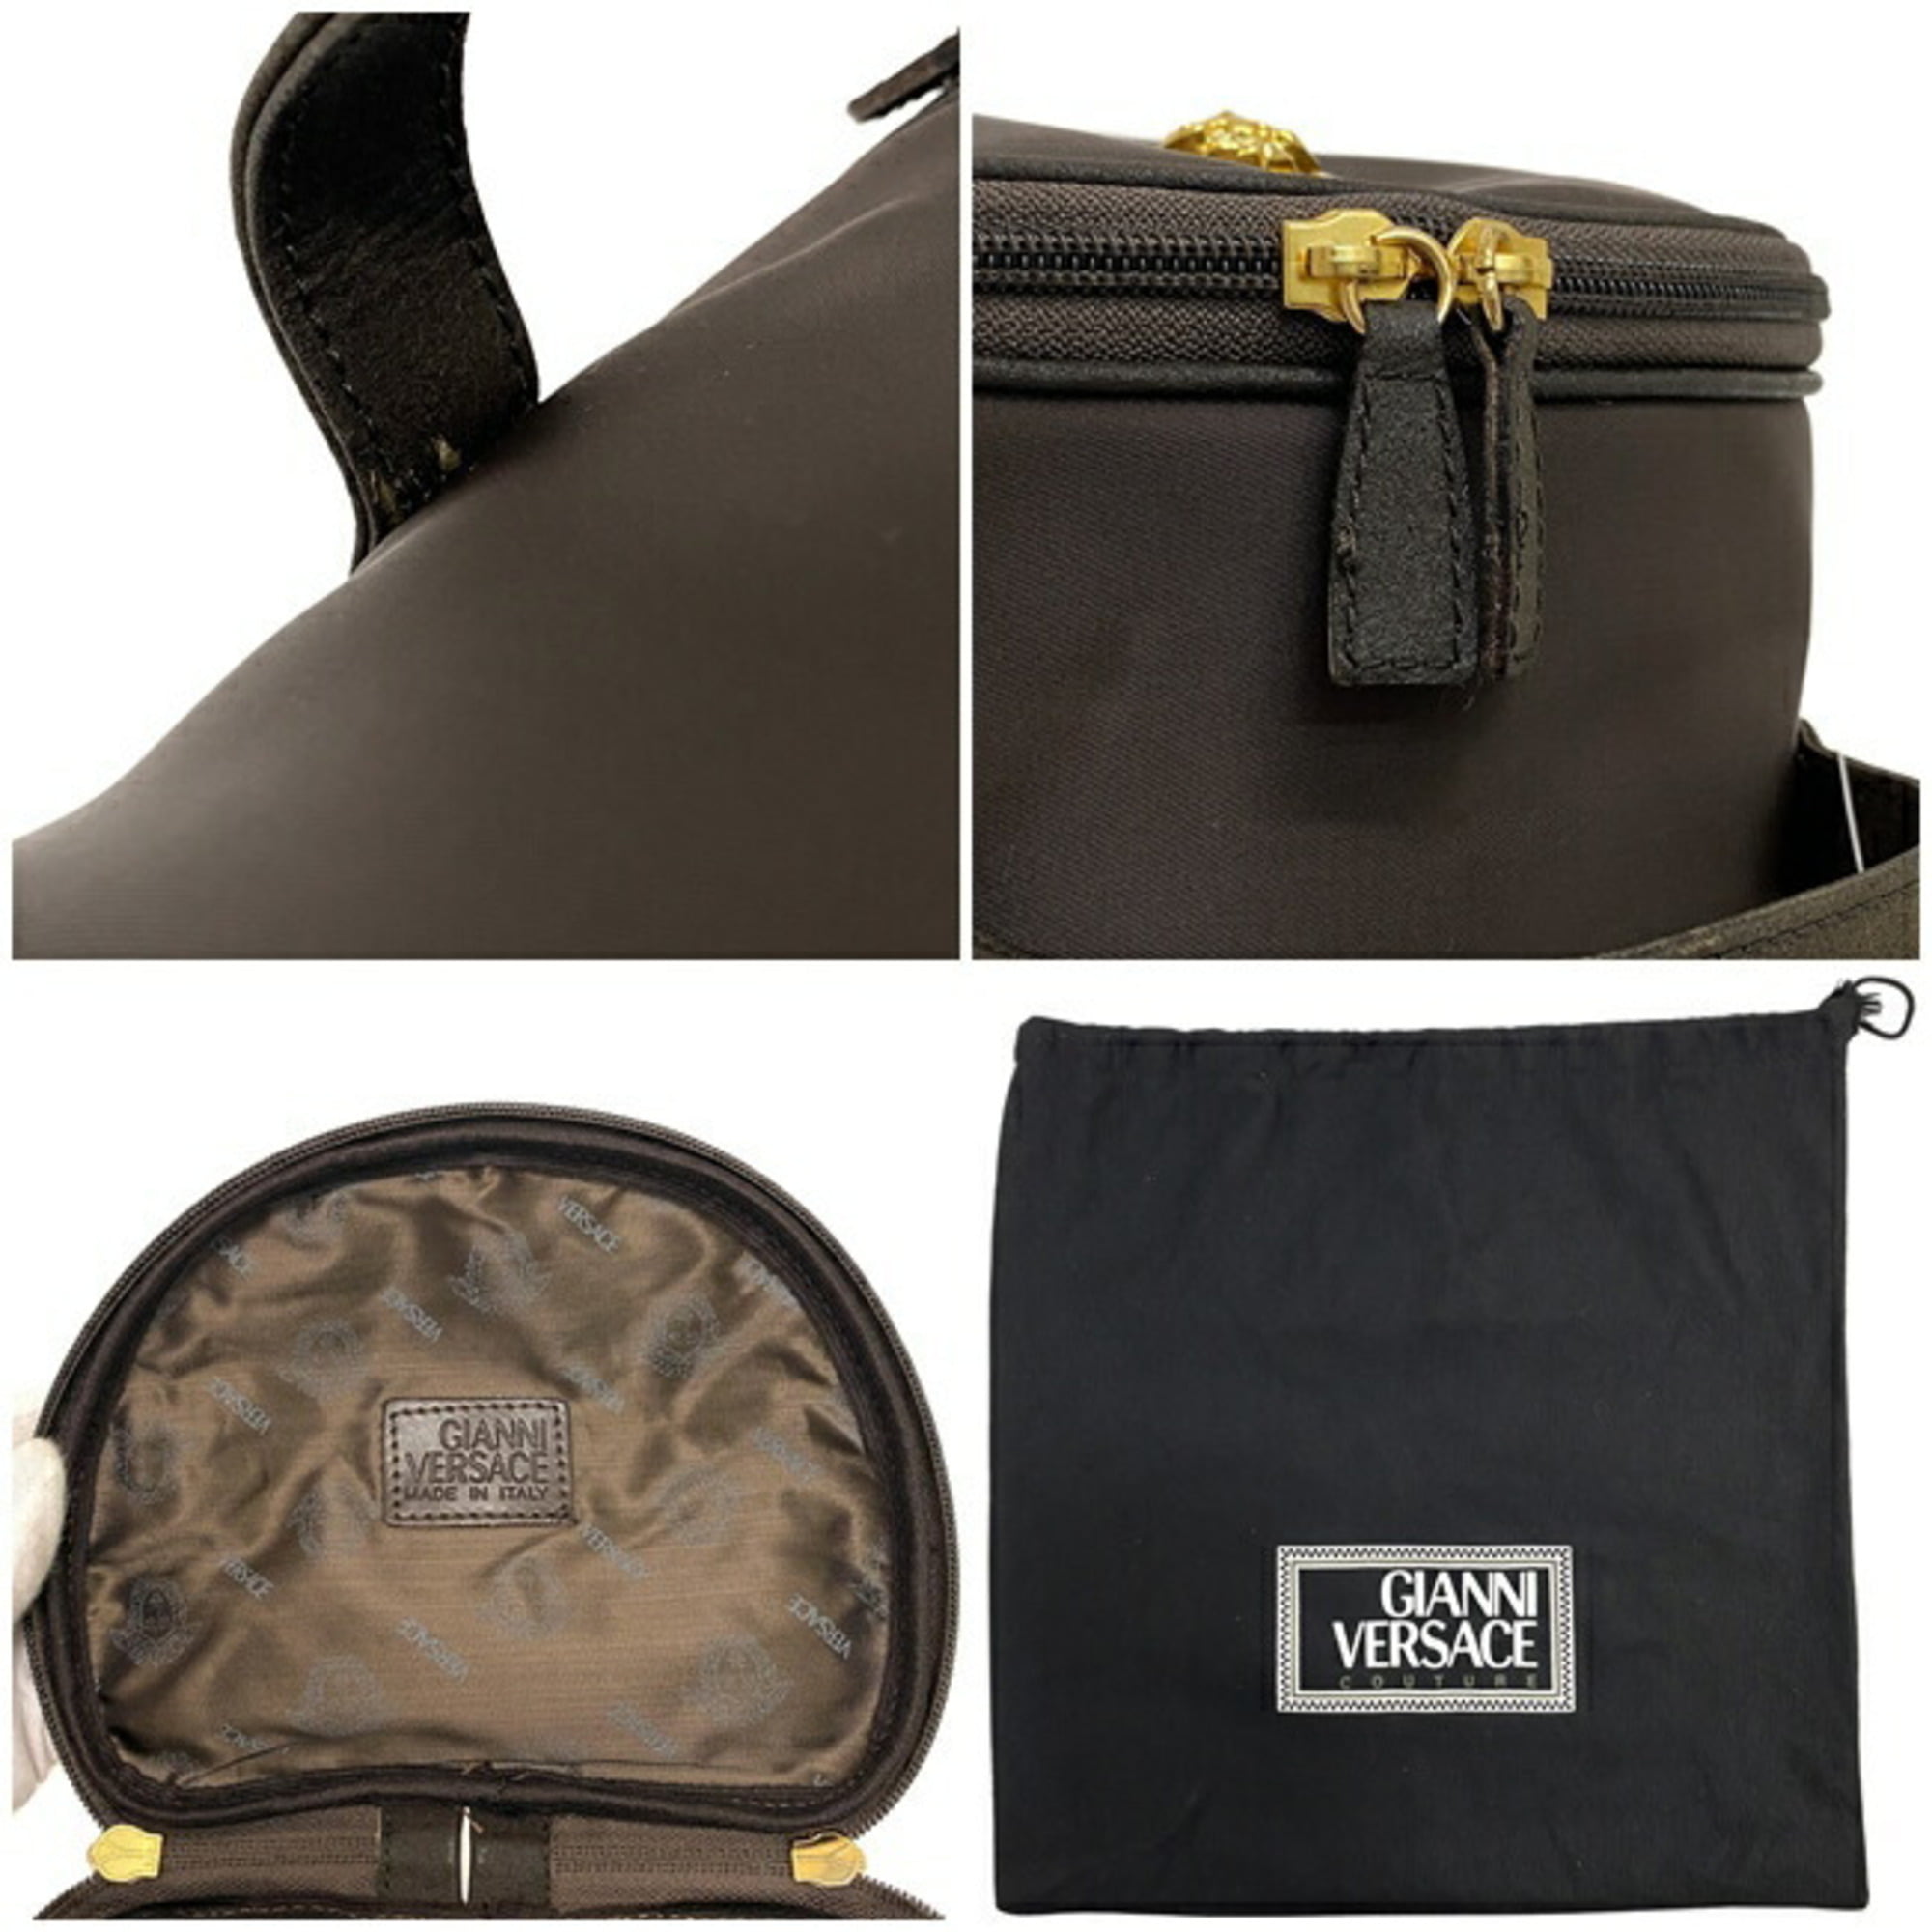 GIANNI VERSACE 70-80's Medusa Gold Leather Bag Shoulder Tote Greek Key Purse  | eBay